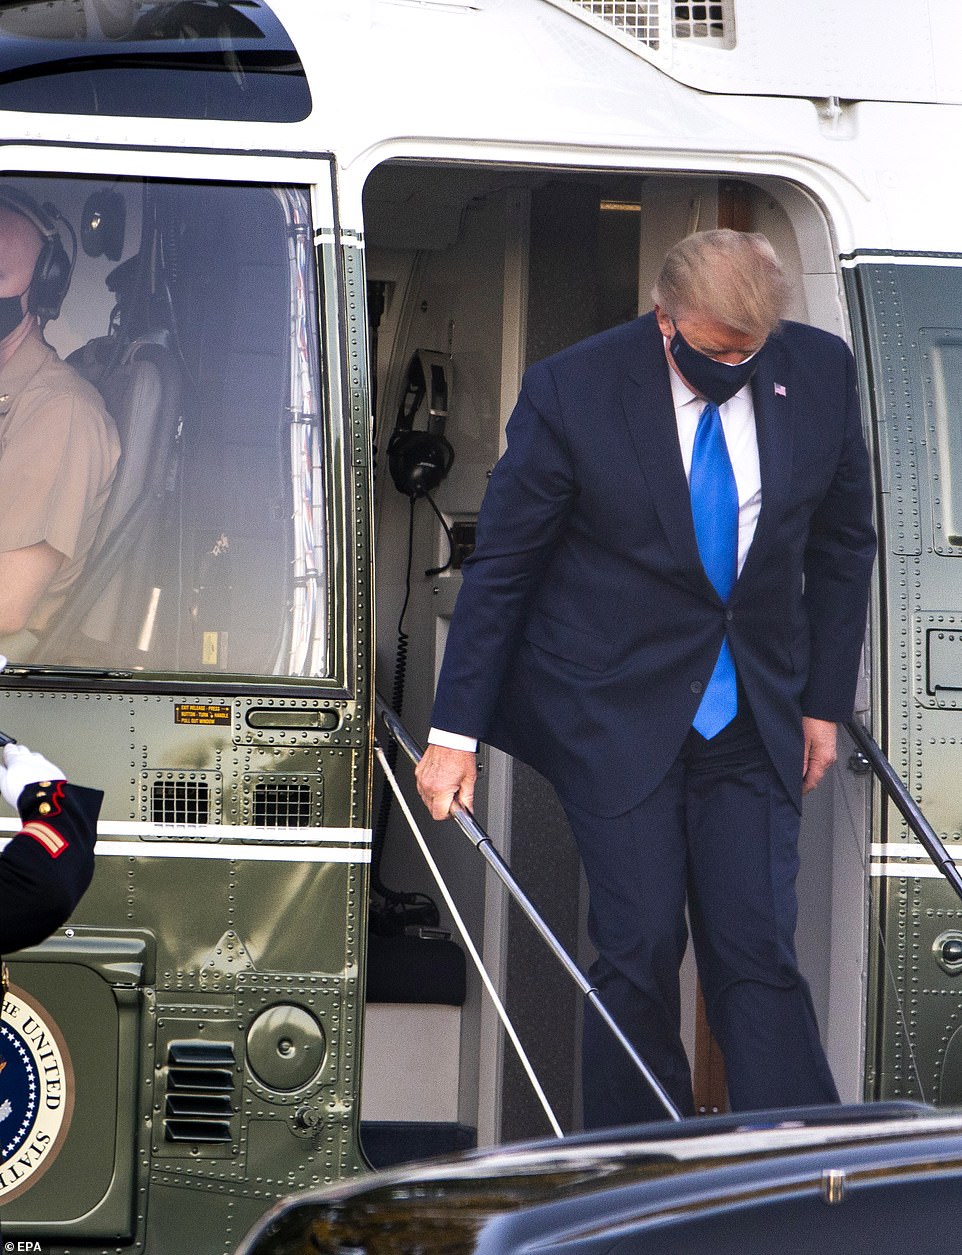 Báo chí Mỹ đặt nghi vấn khi Tổng thống Trump gặp khó khăn lúc lên xuống trực thăng. Ảnh: EPA